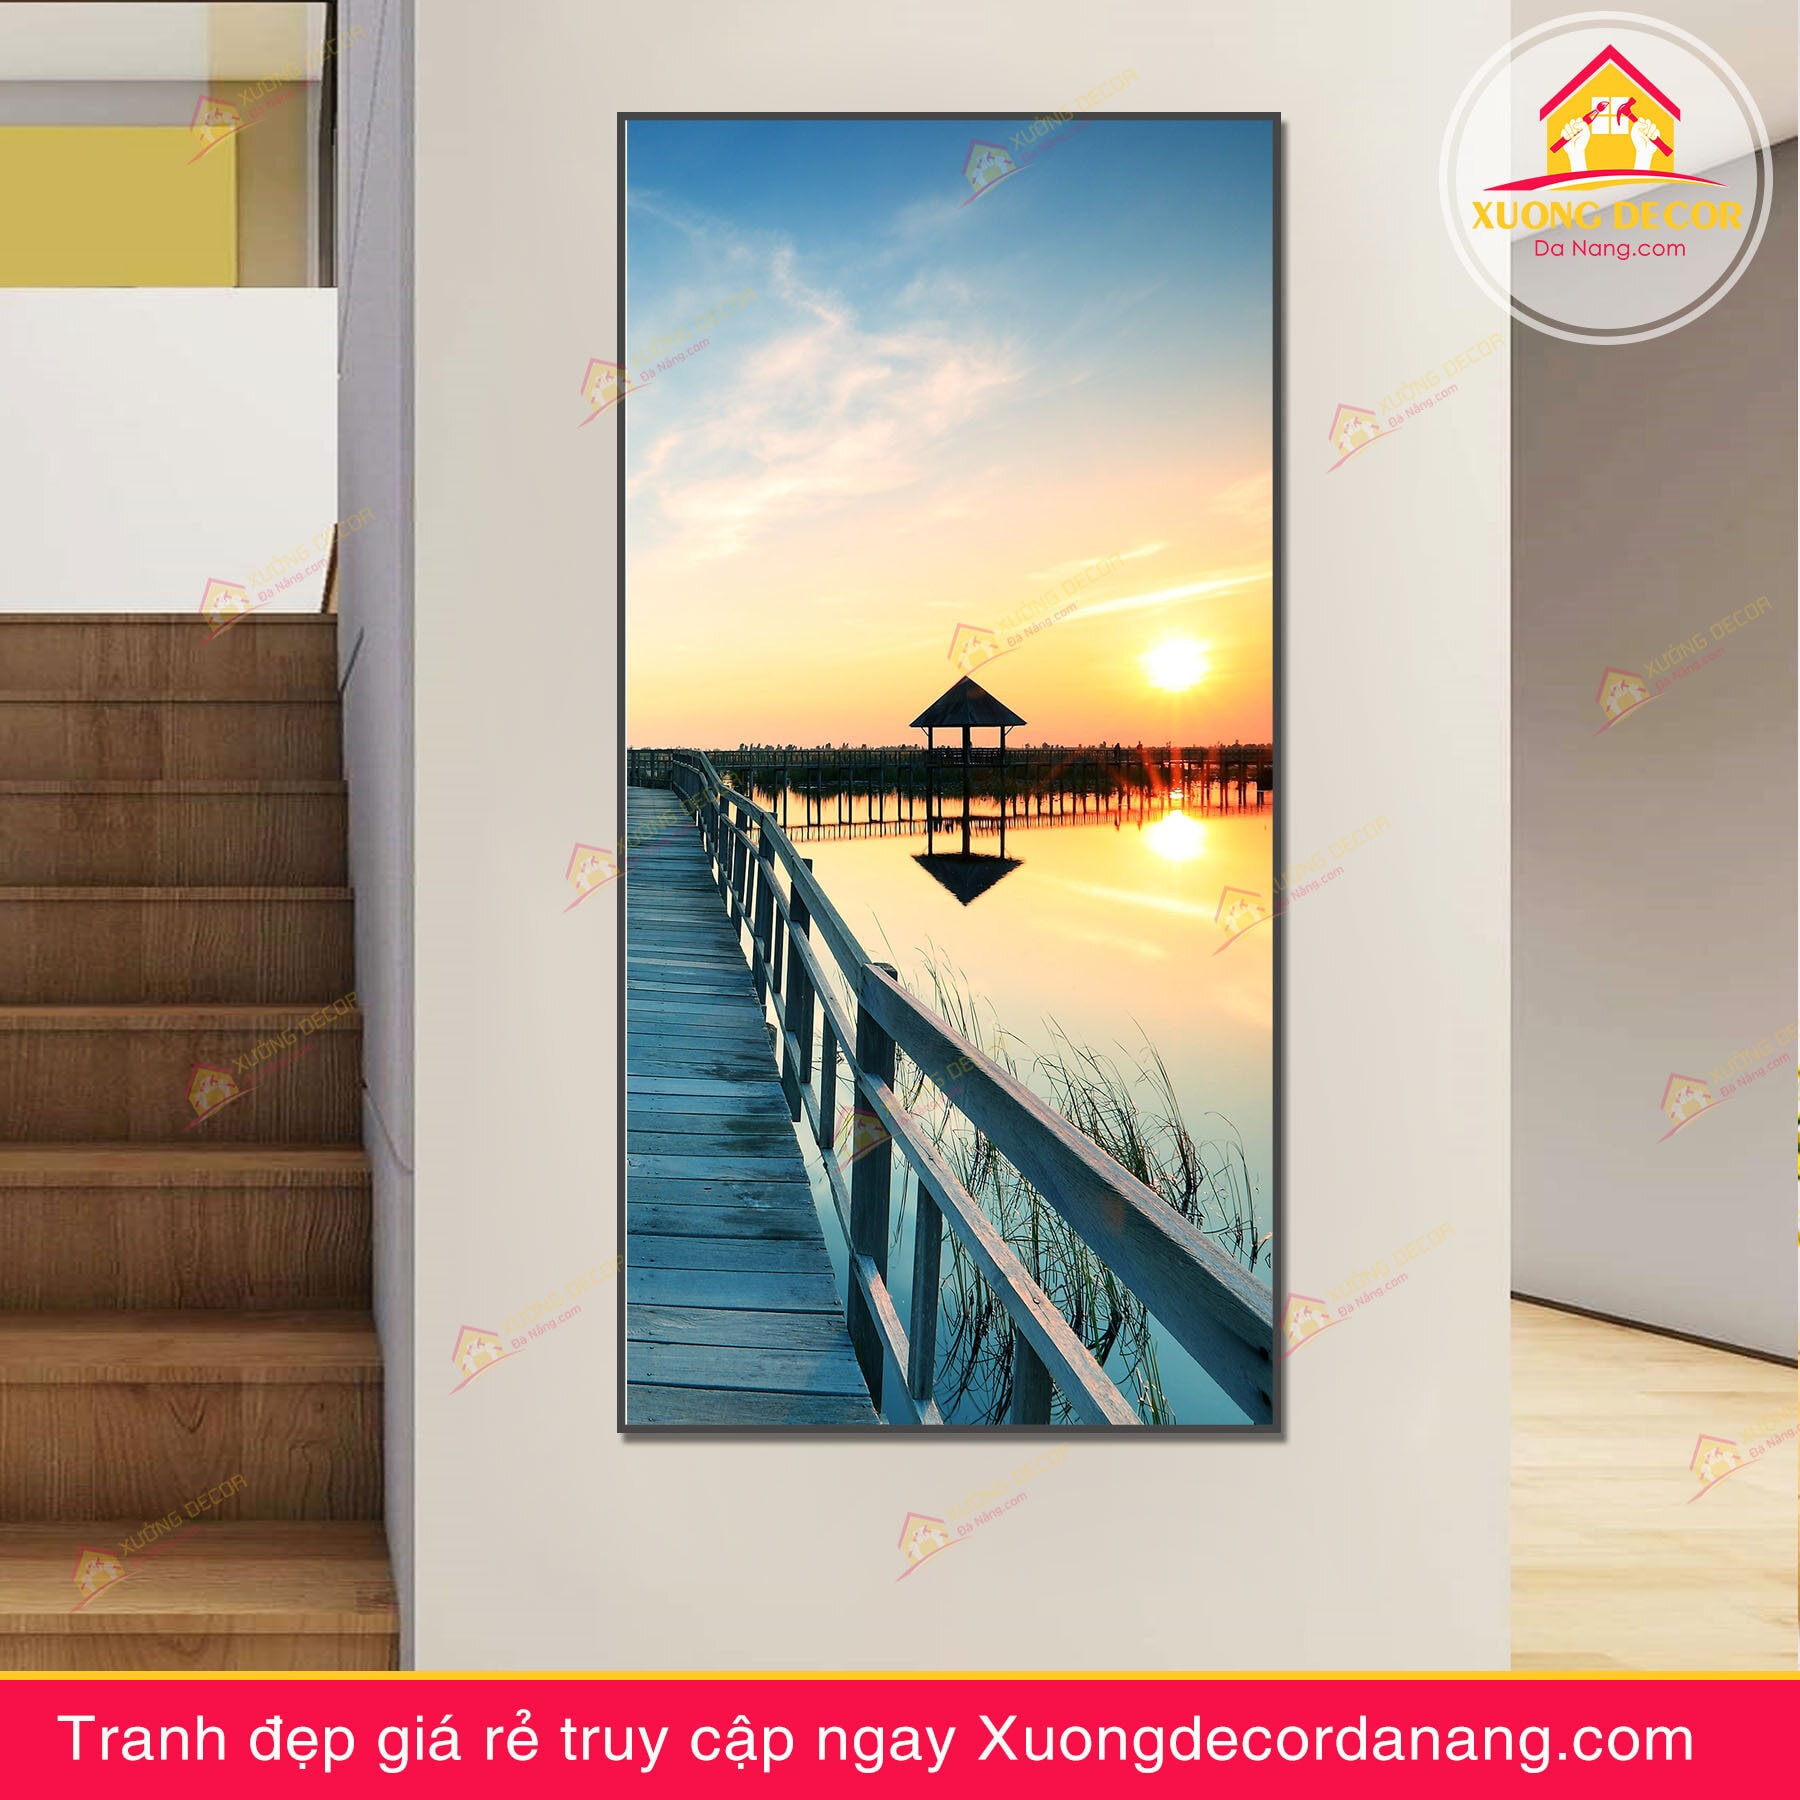 Tranh phong cảnh cầu gỗ trên biển đón bình minh - TPC58 - Xưởng Decor Đà  Nẵng - Xưởng tranh canvas và nội thất decor giá rẻ tại Đà Nẵng